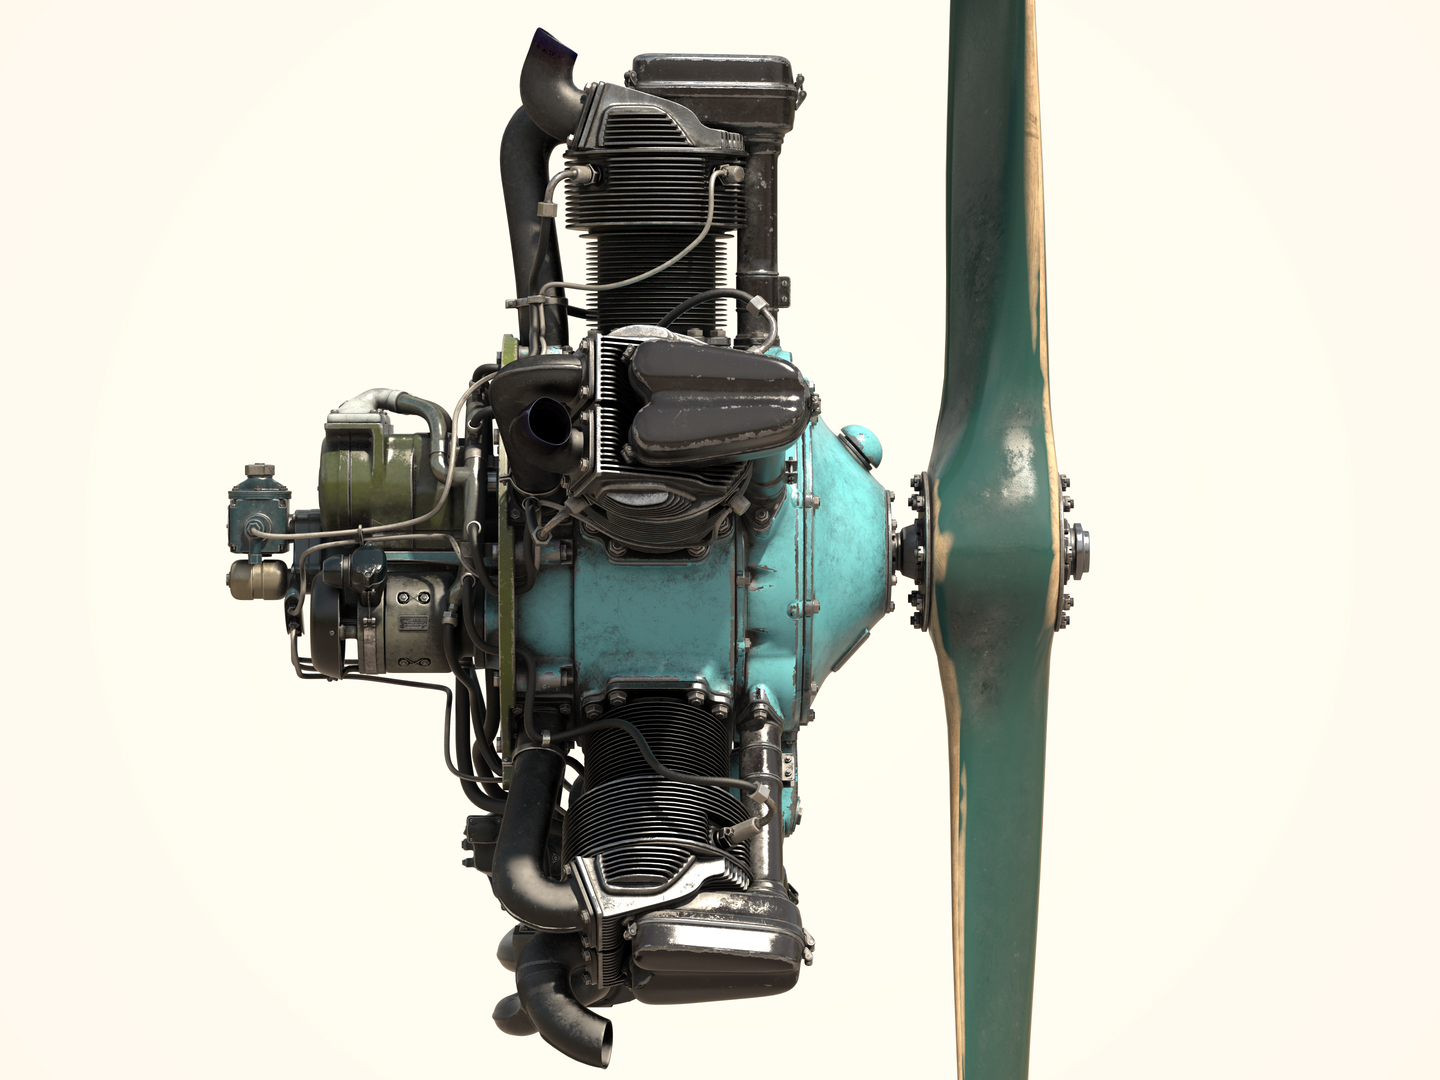 Uçak motoru M-11 3D modeli in 3d max vray 2.5 resim